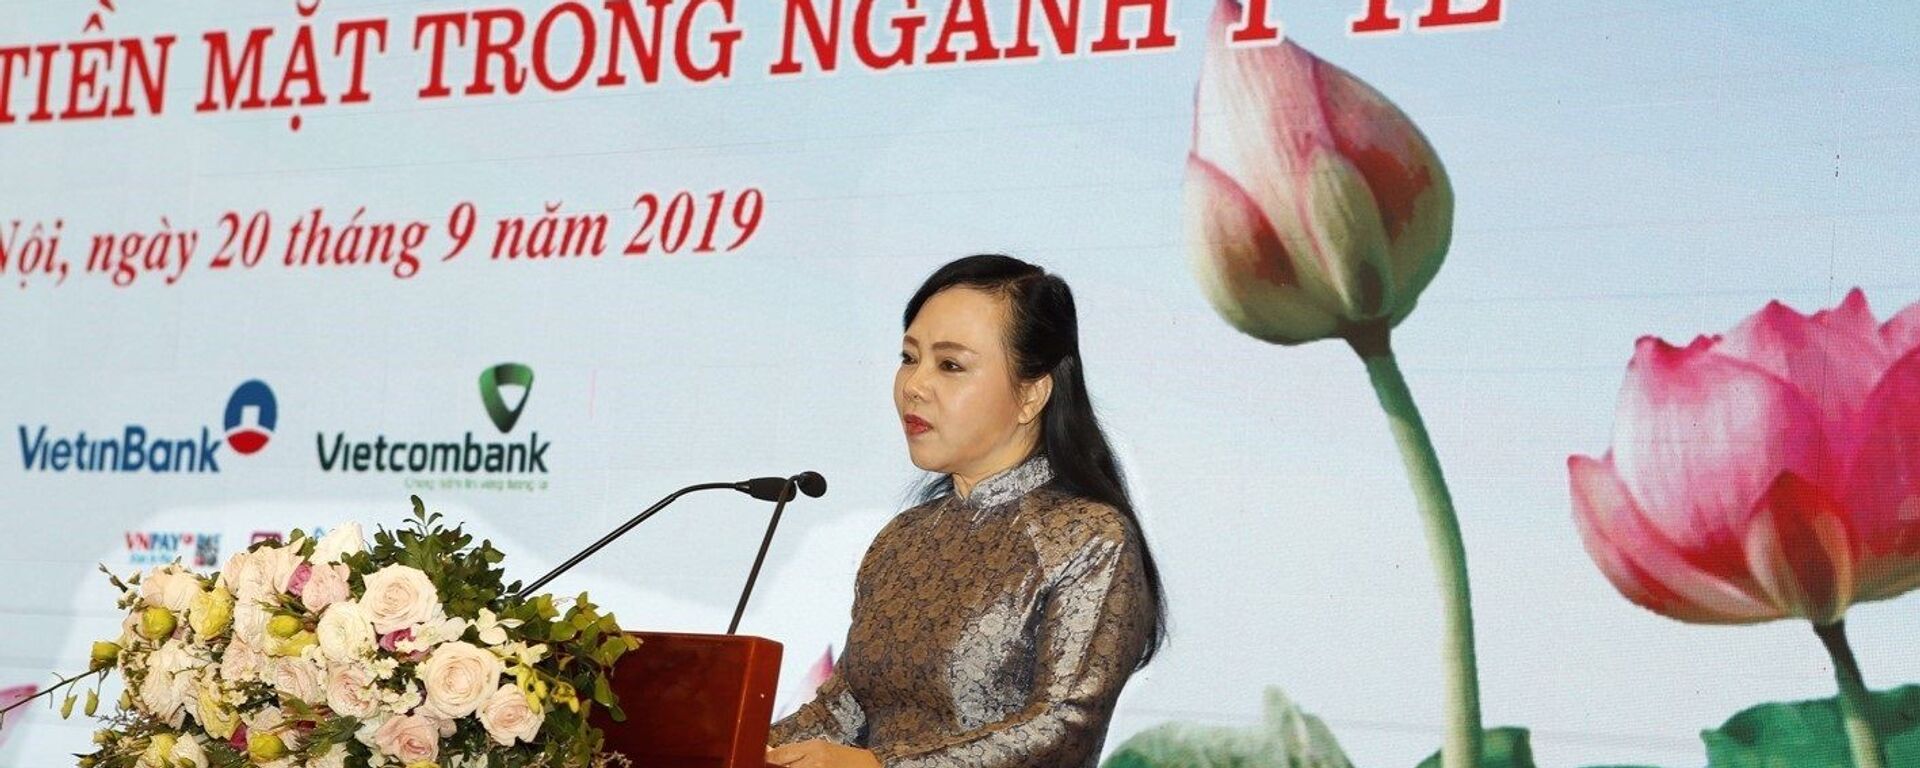 Bộ trưởng Bộ Y tế Nguyễn Thị Kim Tiến phát biểu. - Sputnik Việt Nam, 1920, 15.10.2019